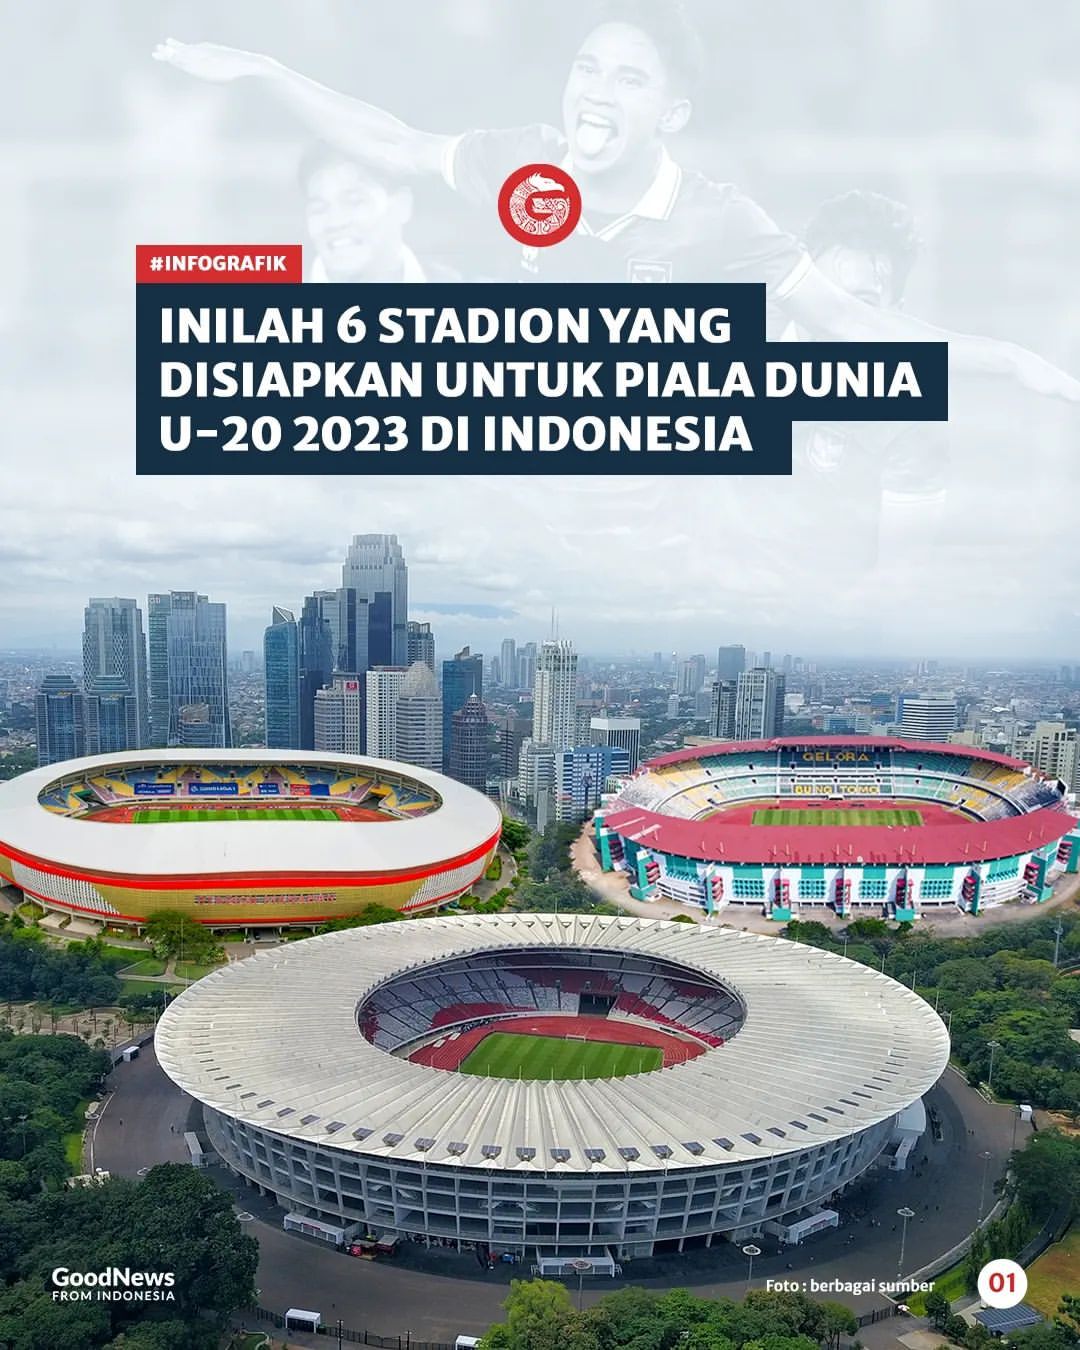 Inilah 6 Stadion yang Disiapkan untuk Piala Dunia U20 2023 di